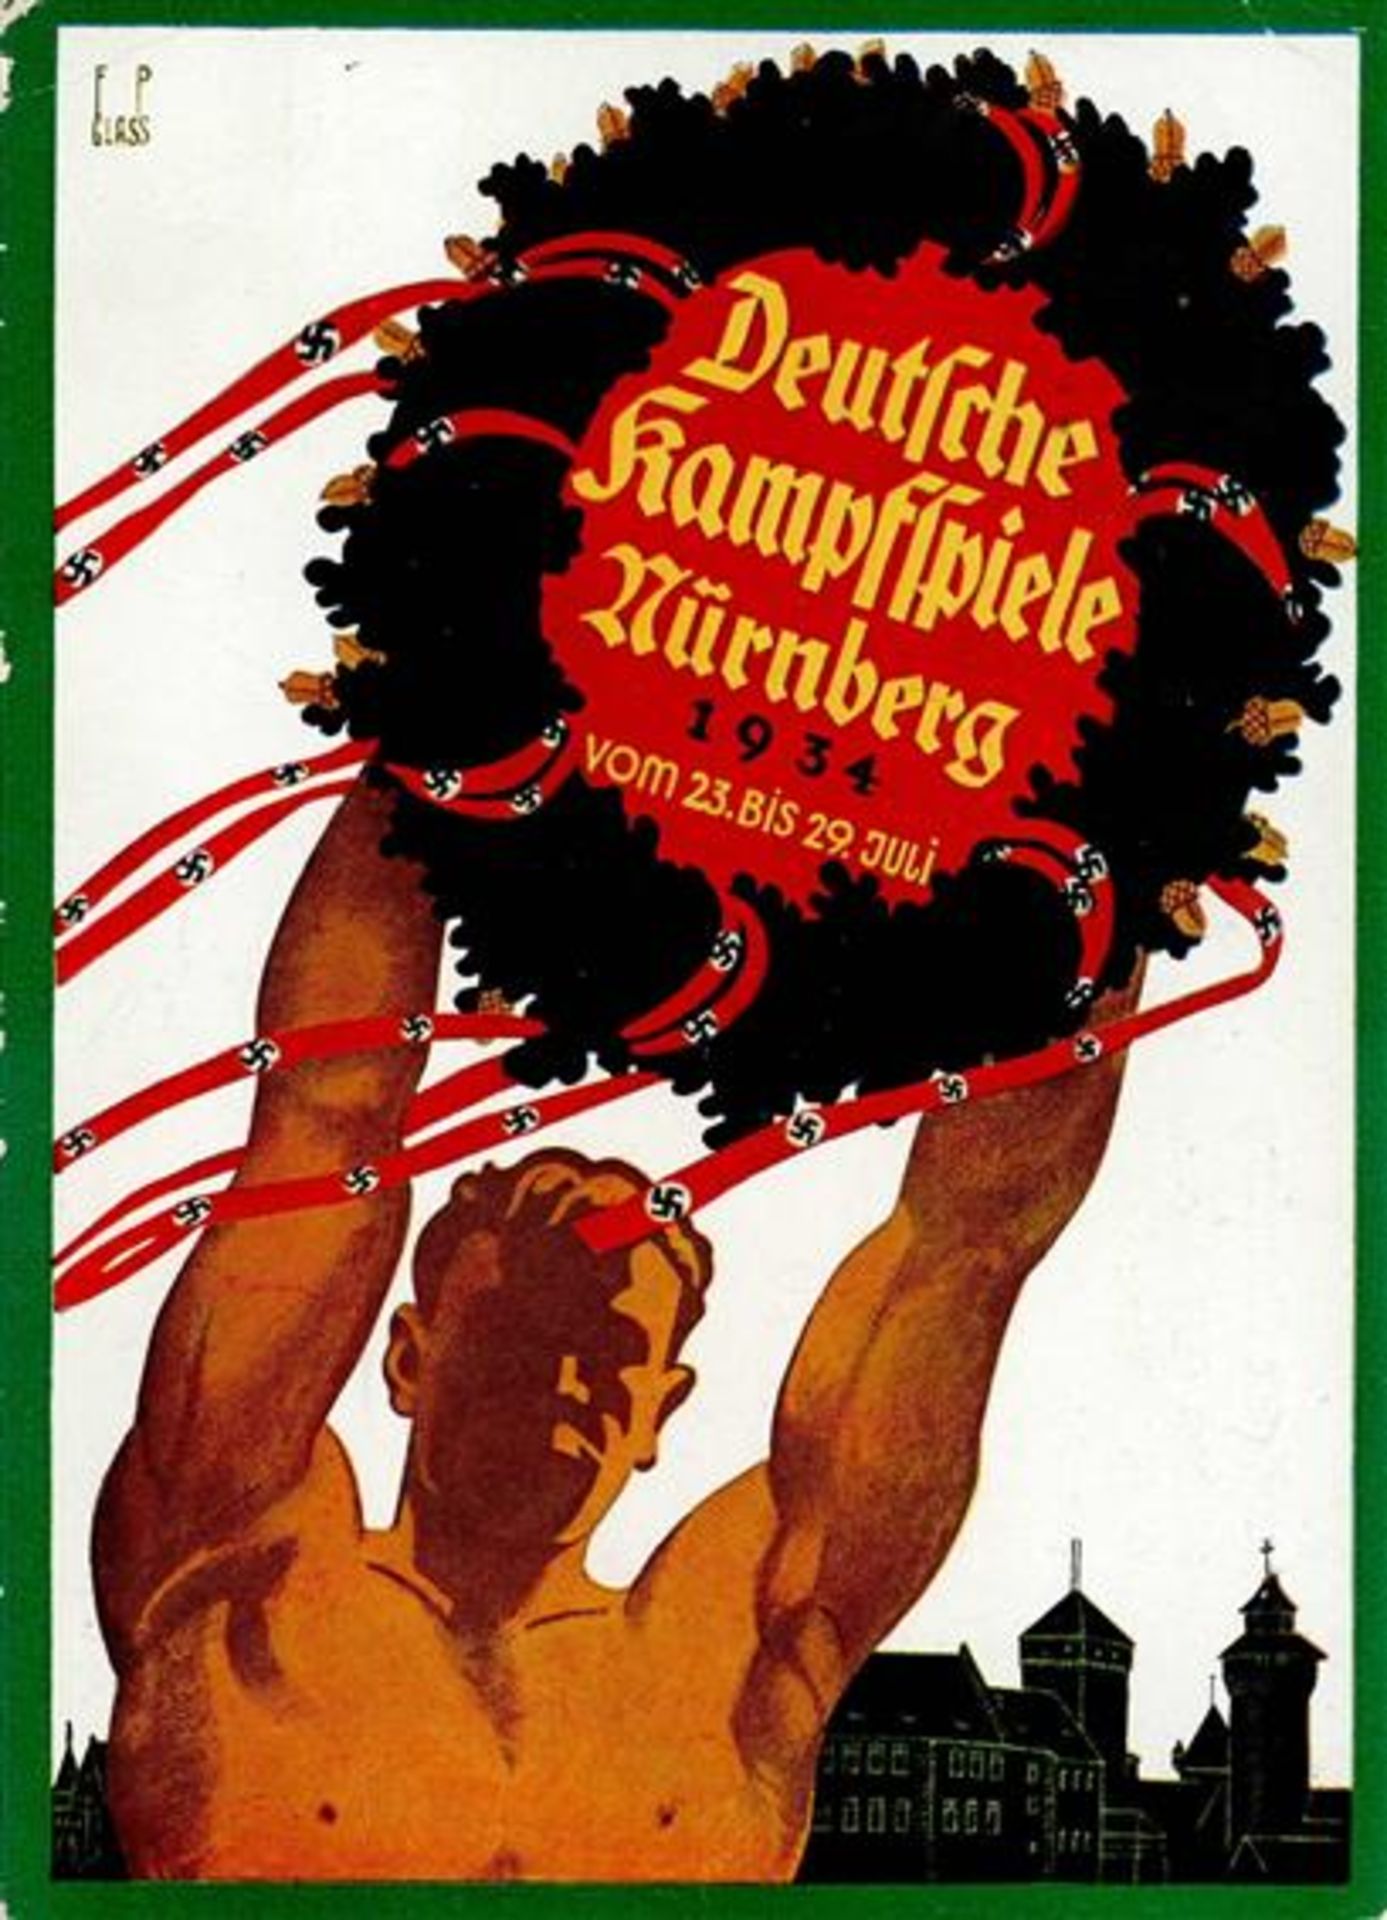 NÜRNBERG WK II - DEUTSCHE KAMPFSPIELE 1934 - Festpostkarte mit S-o - sign. F.P.Glass Ecke gestoßen